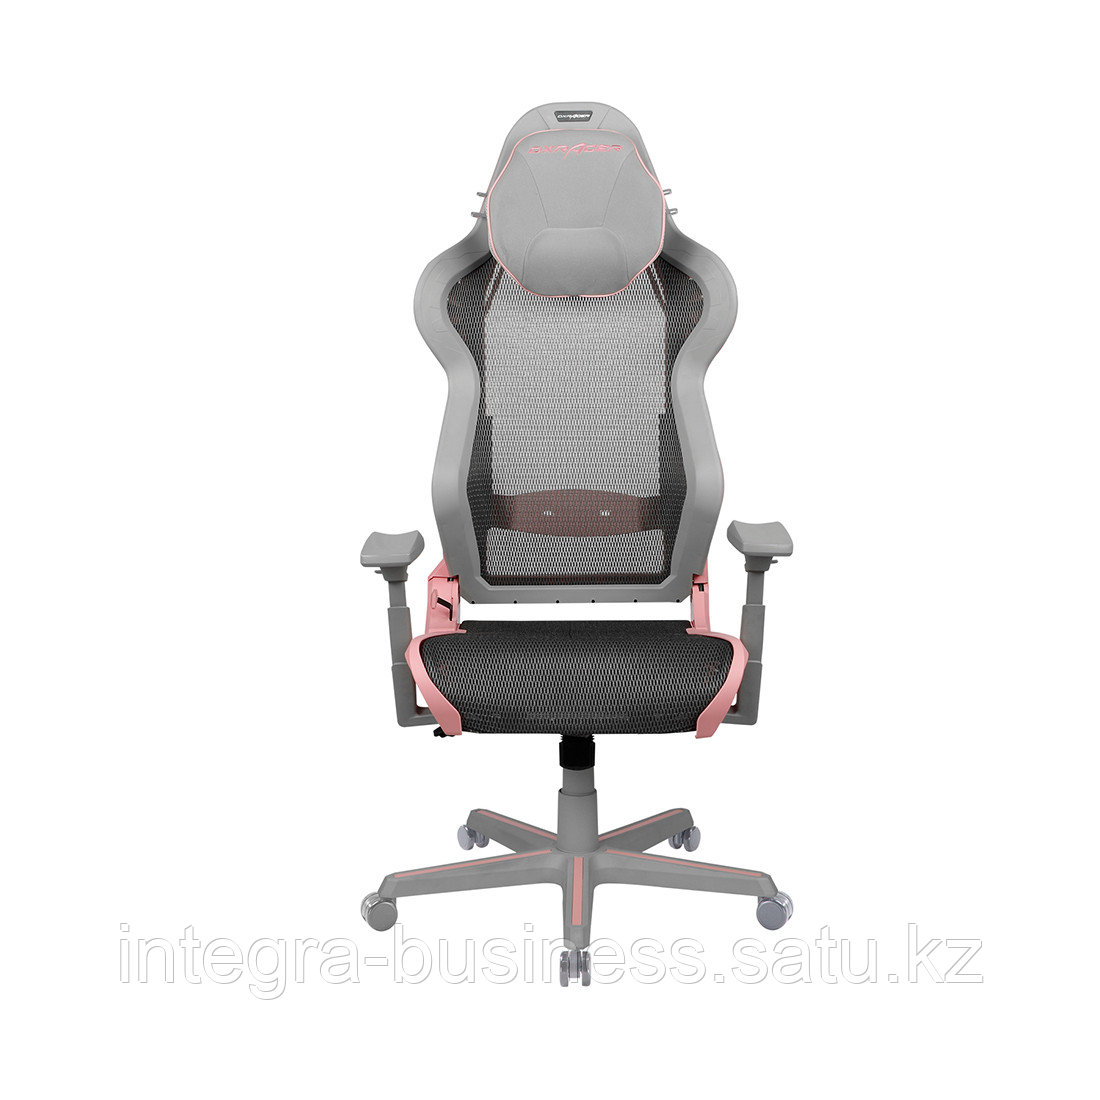 Игровое компьютерное кресло DX Racer AIR/R1S/GP, фото 1